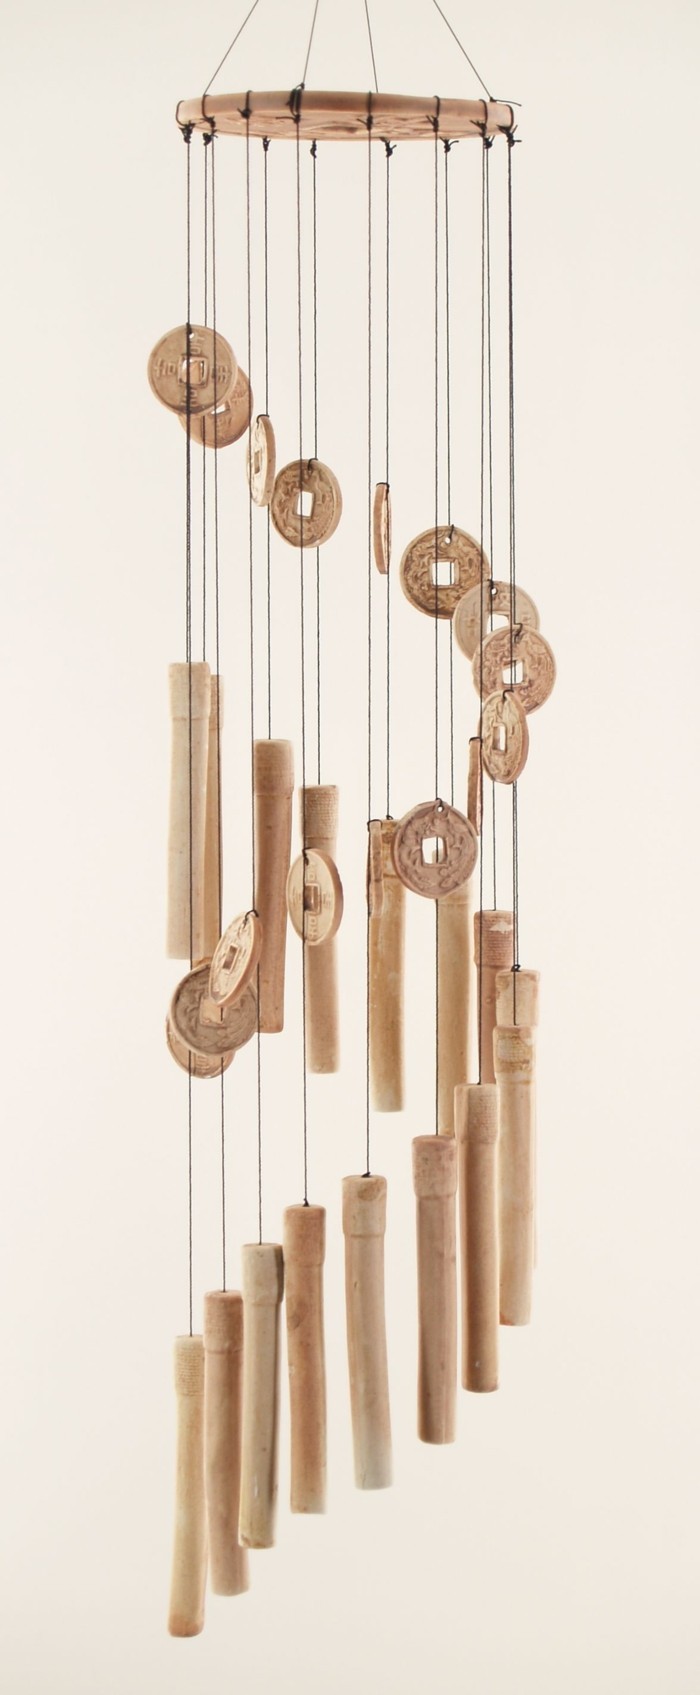 carillon-bambou-decoration-donnant-un-air-exotique-et-sauvage-a-votre-domicile